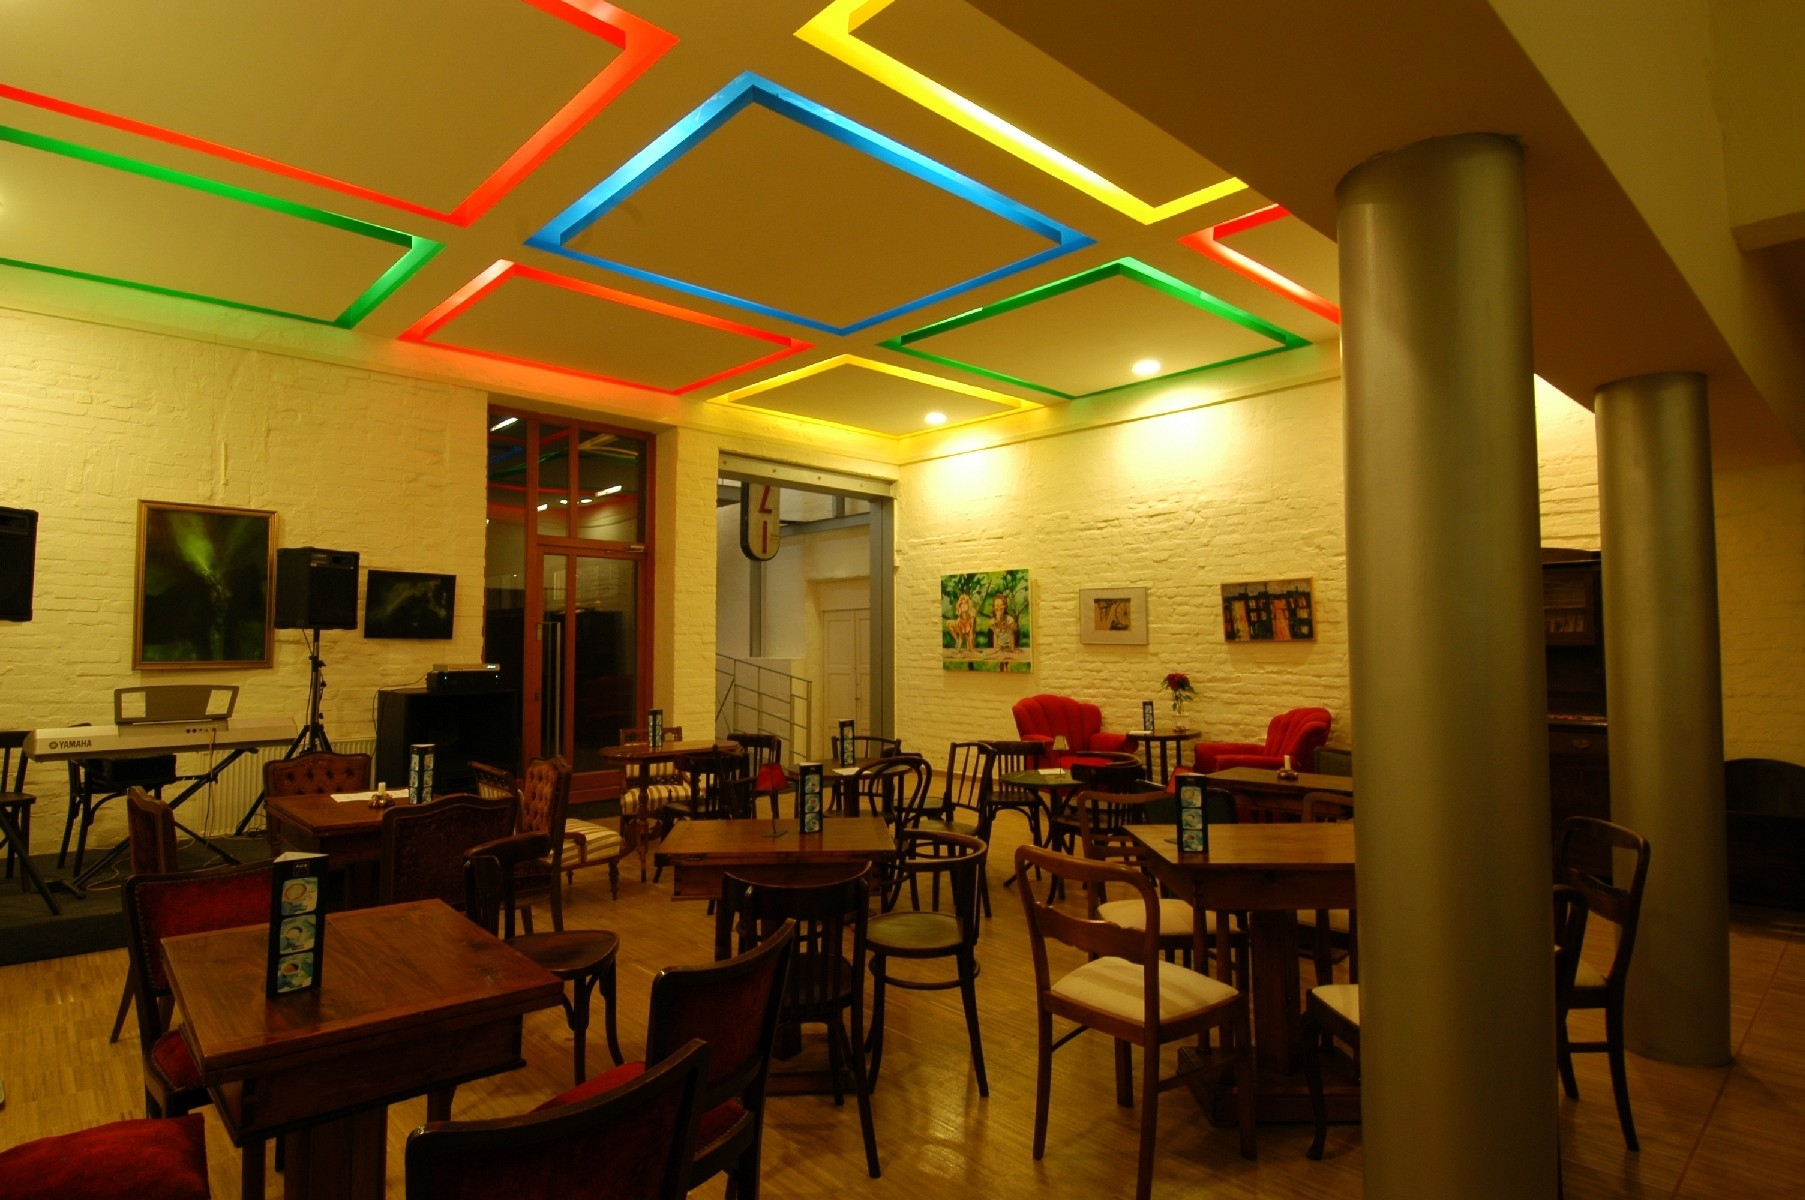 Café of the cinema